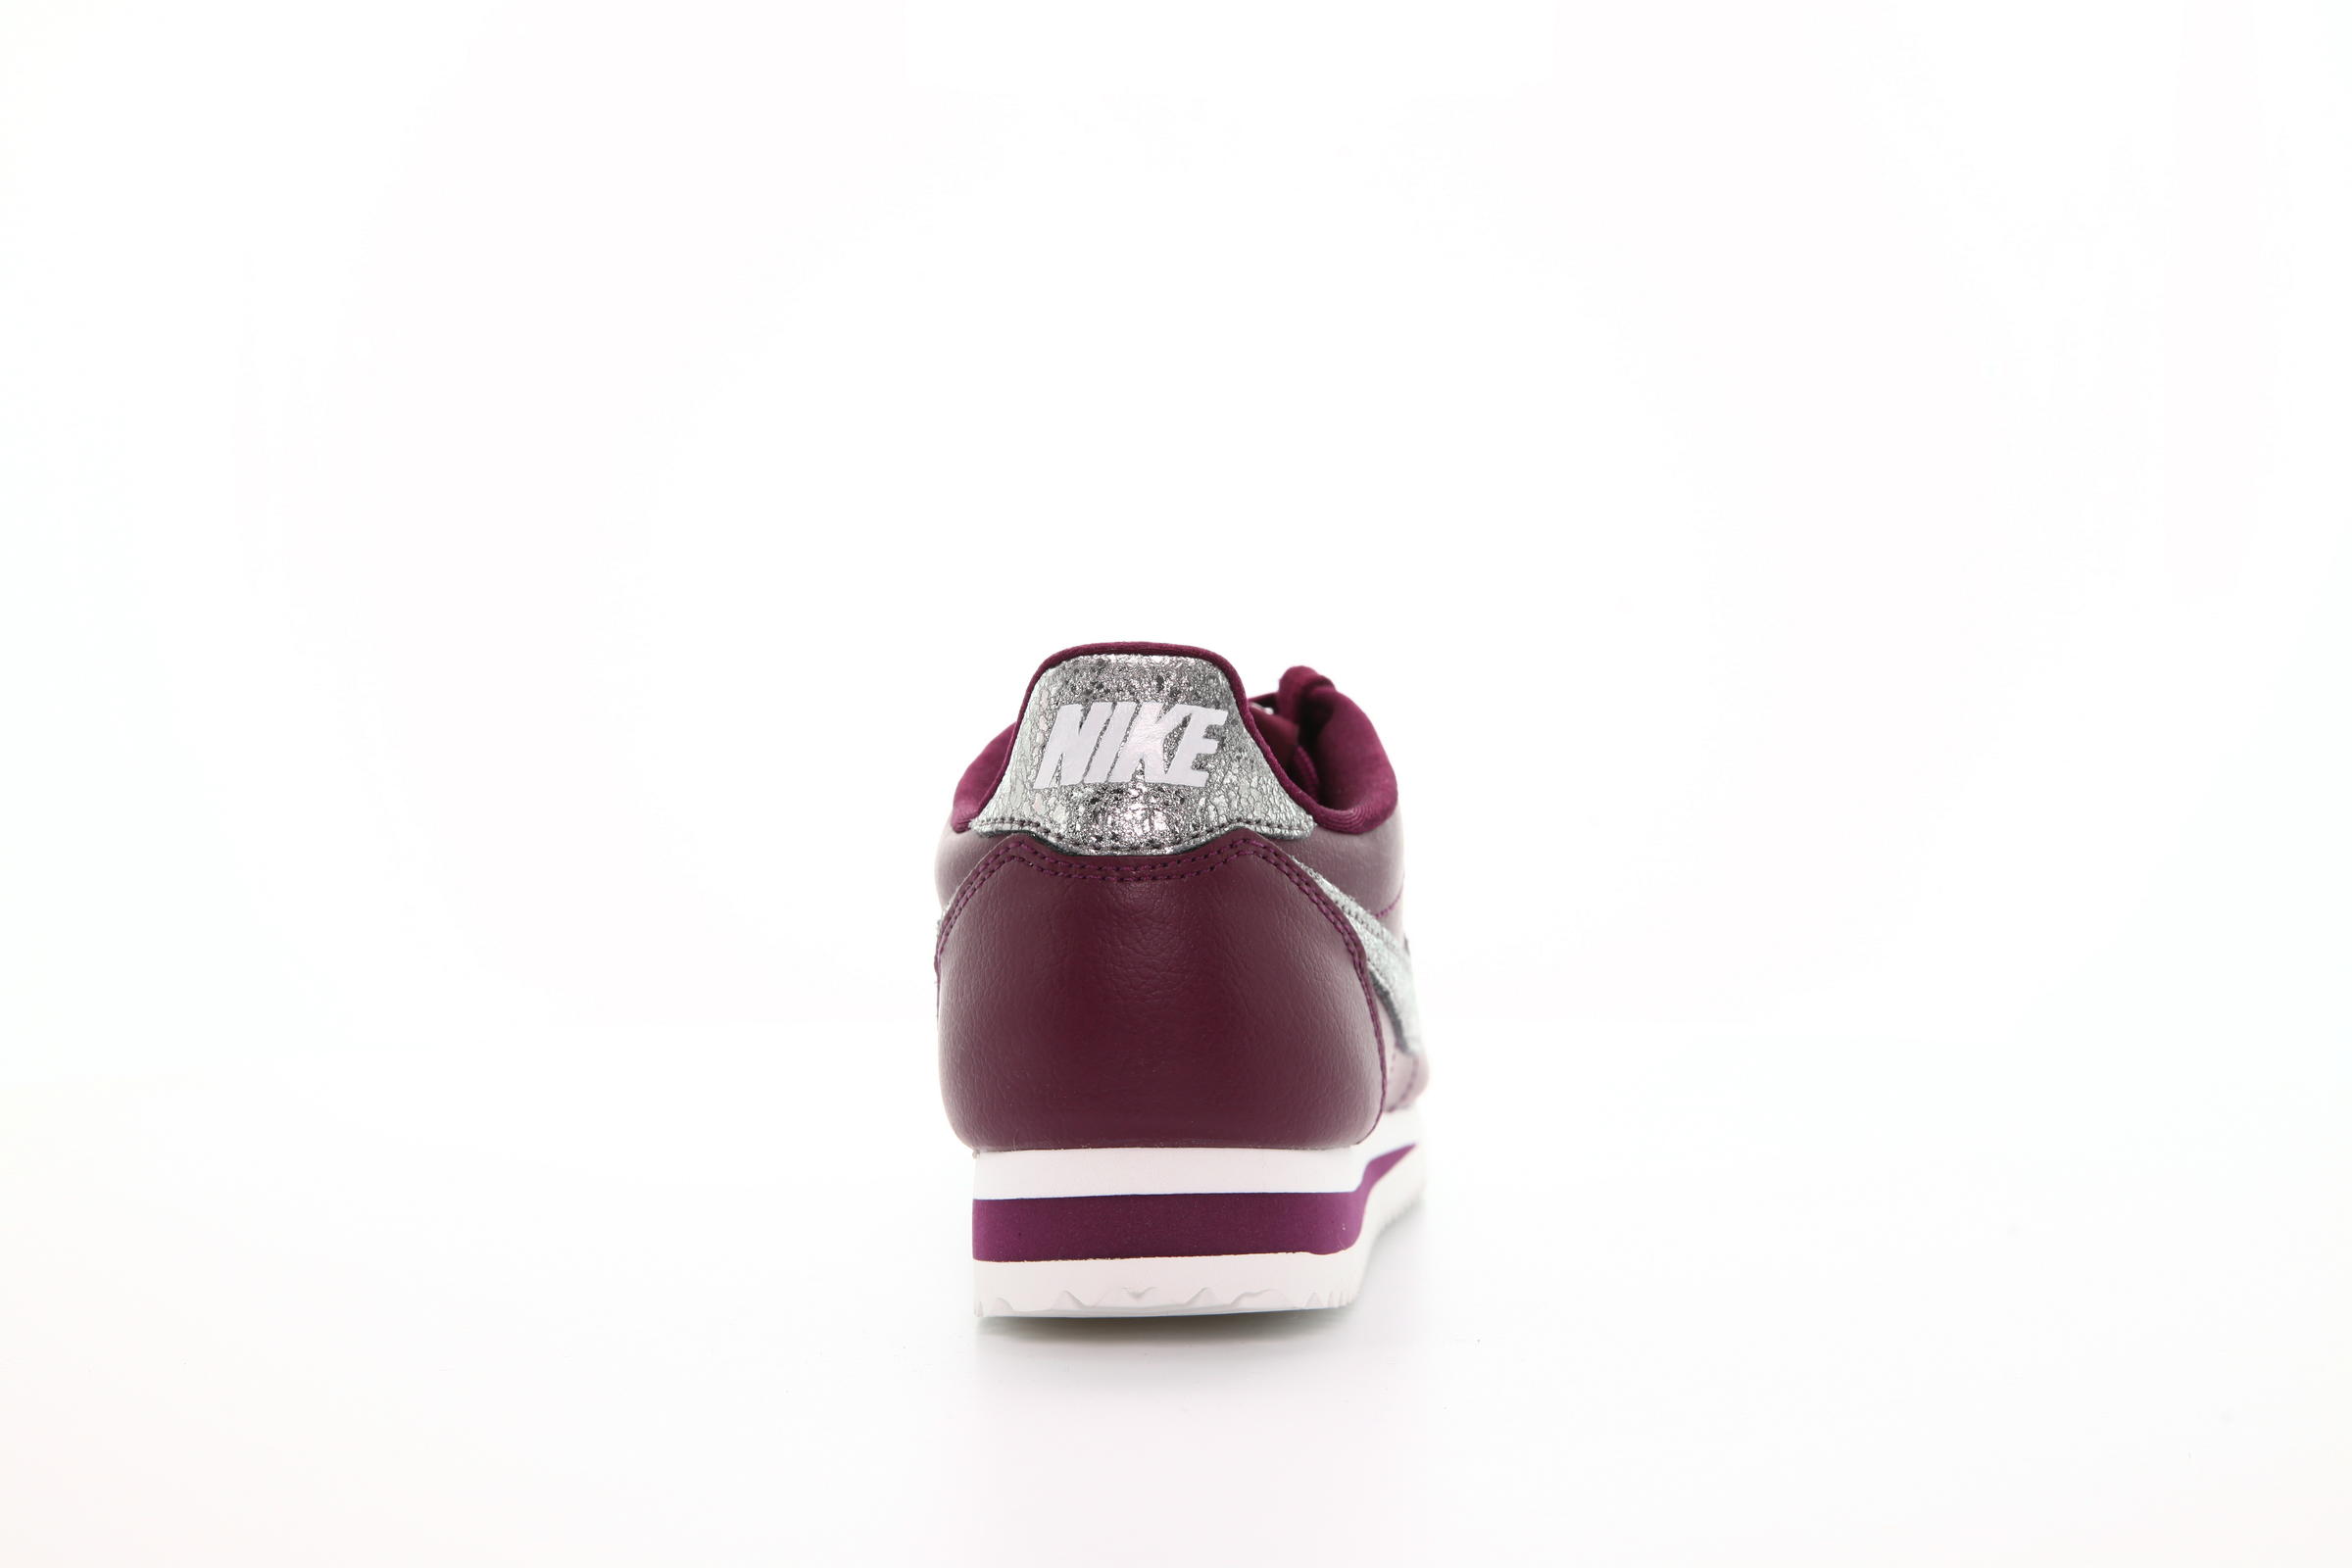 Nike Wmns Classic Cortez Premium "Bordeaux"